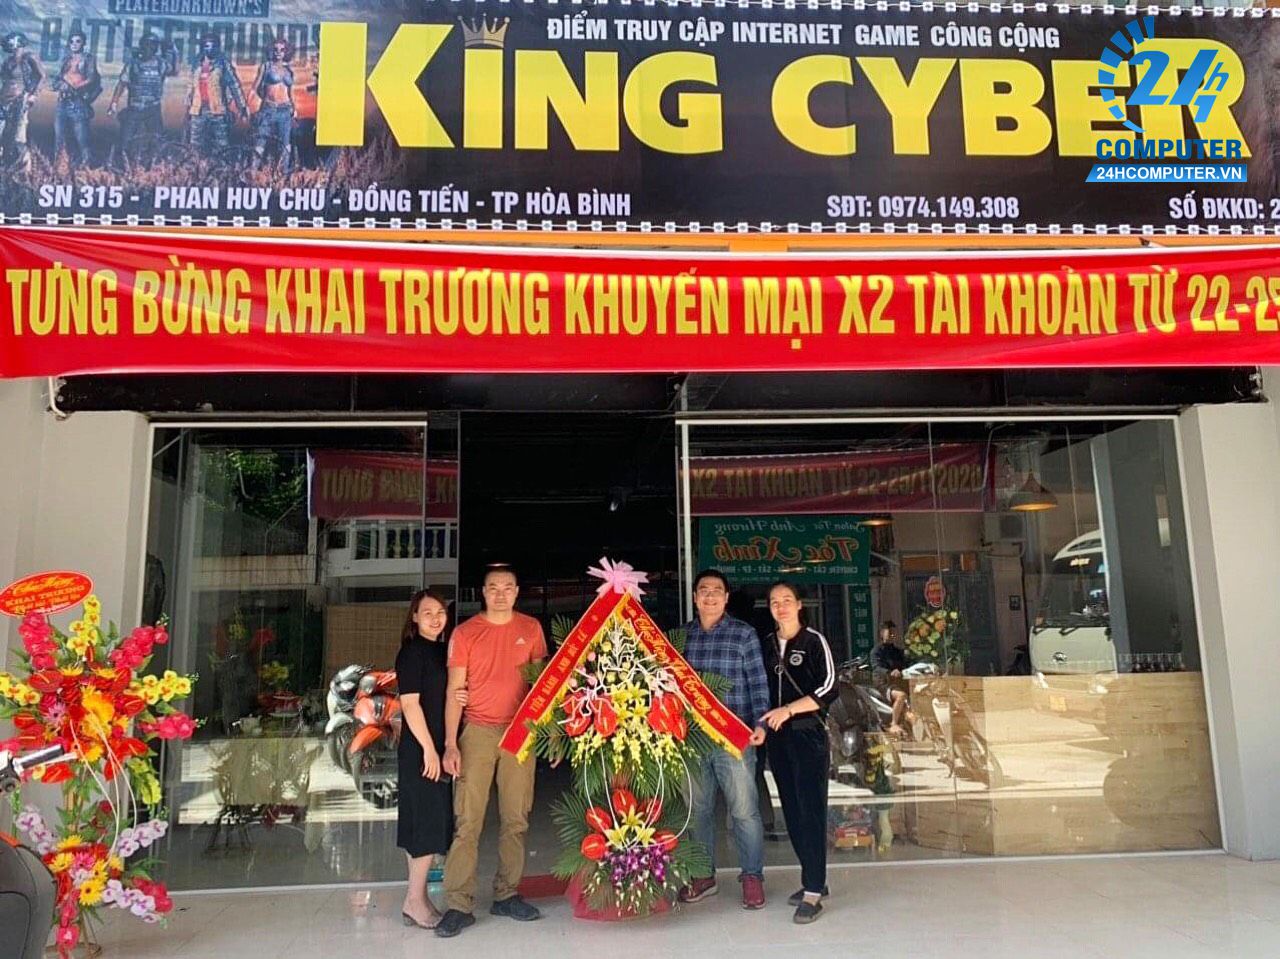 Lắp đặt phòng net trọn gói tại 315 Phan Huy Chú, Đồng Tiến, TP Hòa Bình